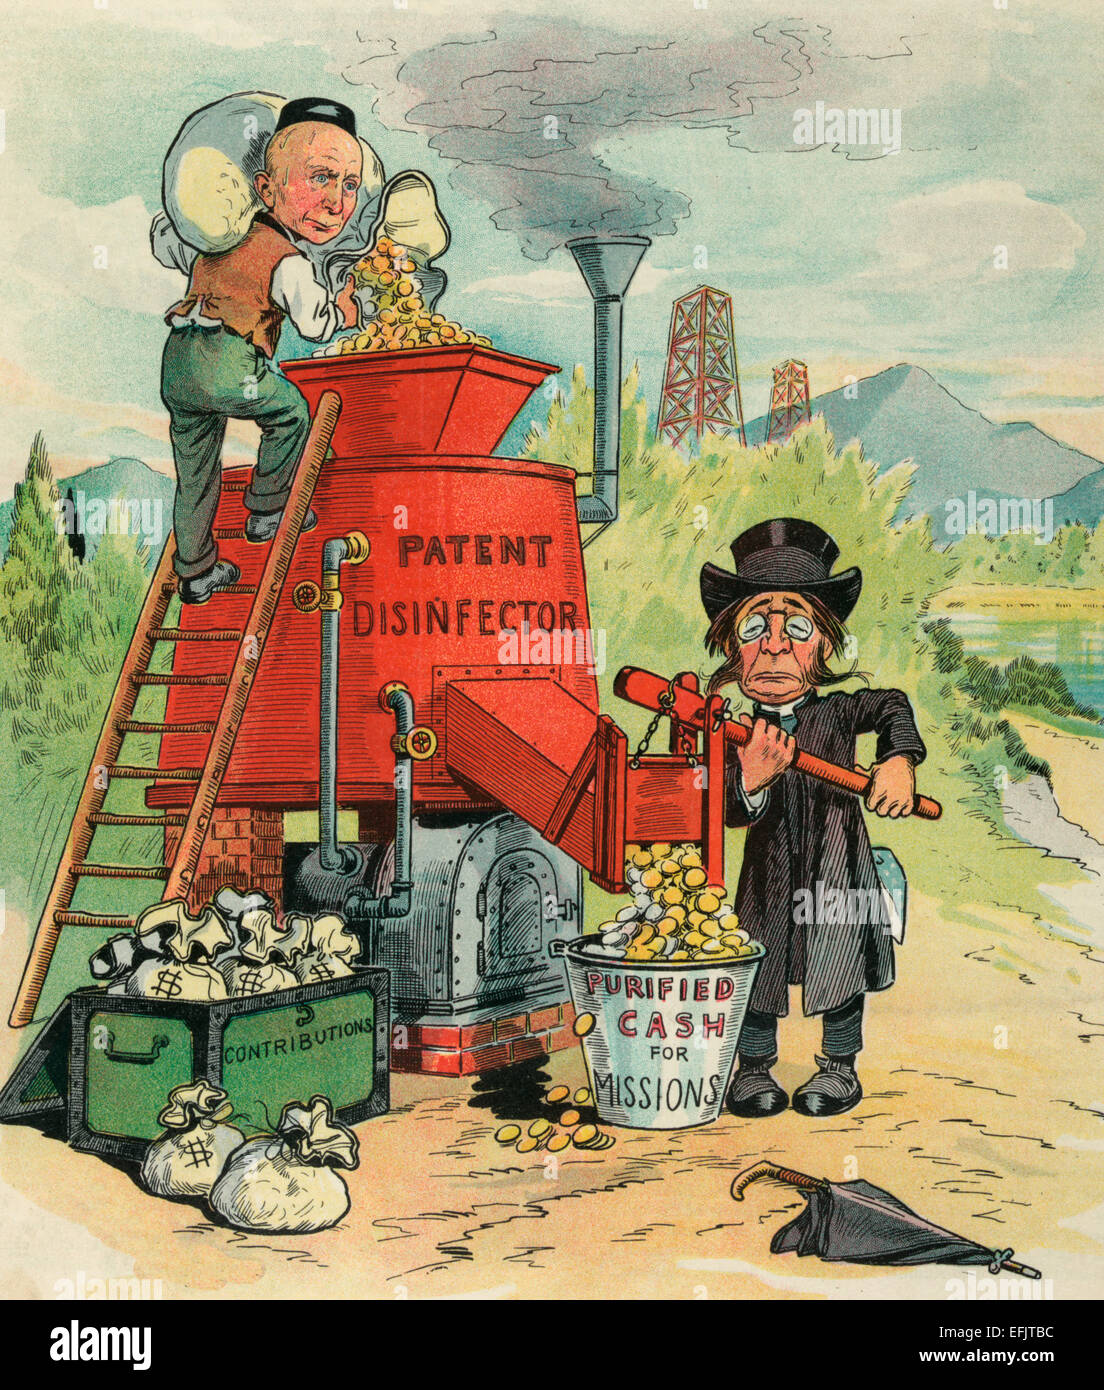 Der Bargeld-Kläranlage - Abbildung zeigt Rockefeller auf einer Leiter stehend, dumping Münzen in ein "Patent-Disinfector" als Mitglied des Klerus öffnet, die einen Schlitz und Münzen in einen Eimer mit der Aufschrift "Cash for Missionen gereinigt" gießen. Ein offene Stamm mit der Bezeichnung "Beiträge", voller Geldtaschen, ist am Fuße der Leiter.  Politische Karikatur, ca. 1905 Stockfoto